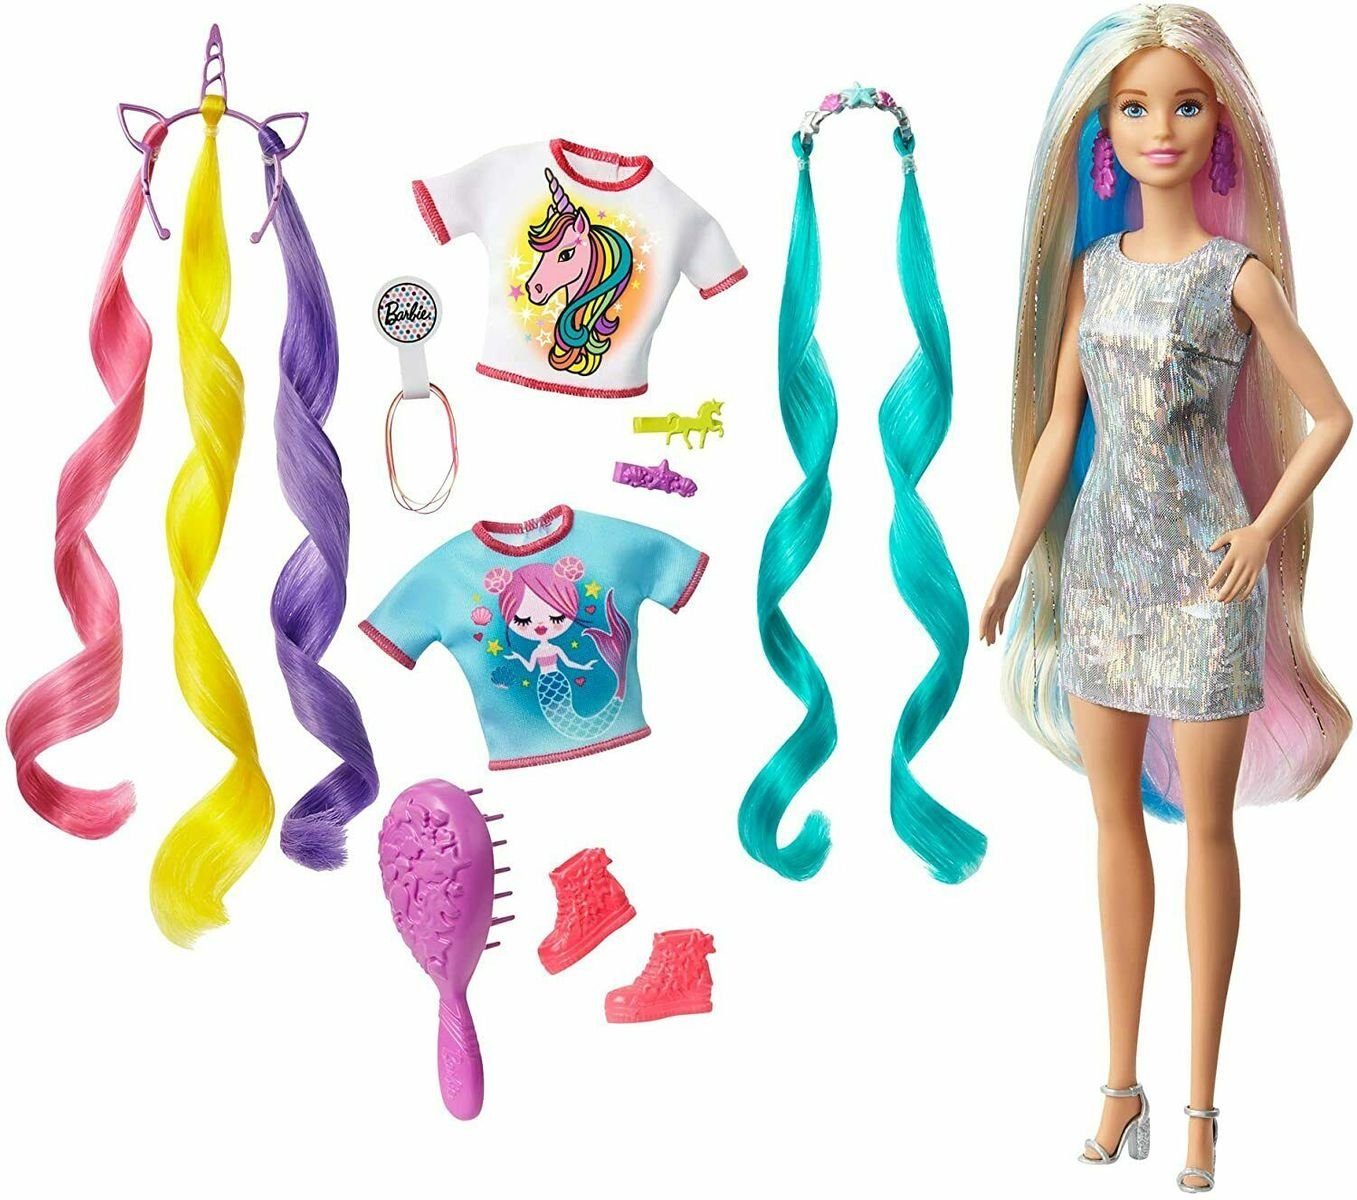 Mattel® Anziehpuppe »Mattel GHN04 - Barbie - Puppe, Einhorn- und  Meerjungfrau-Look, Fantasie-Haar« online kaufen | OTTO